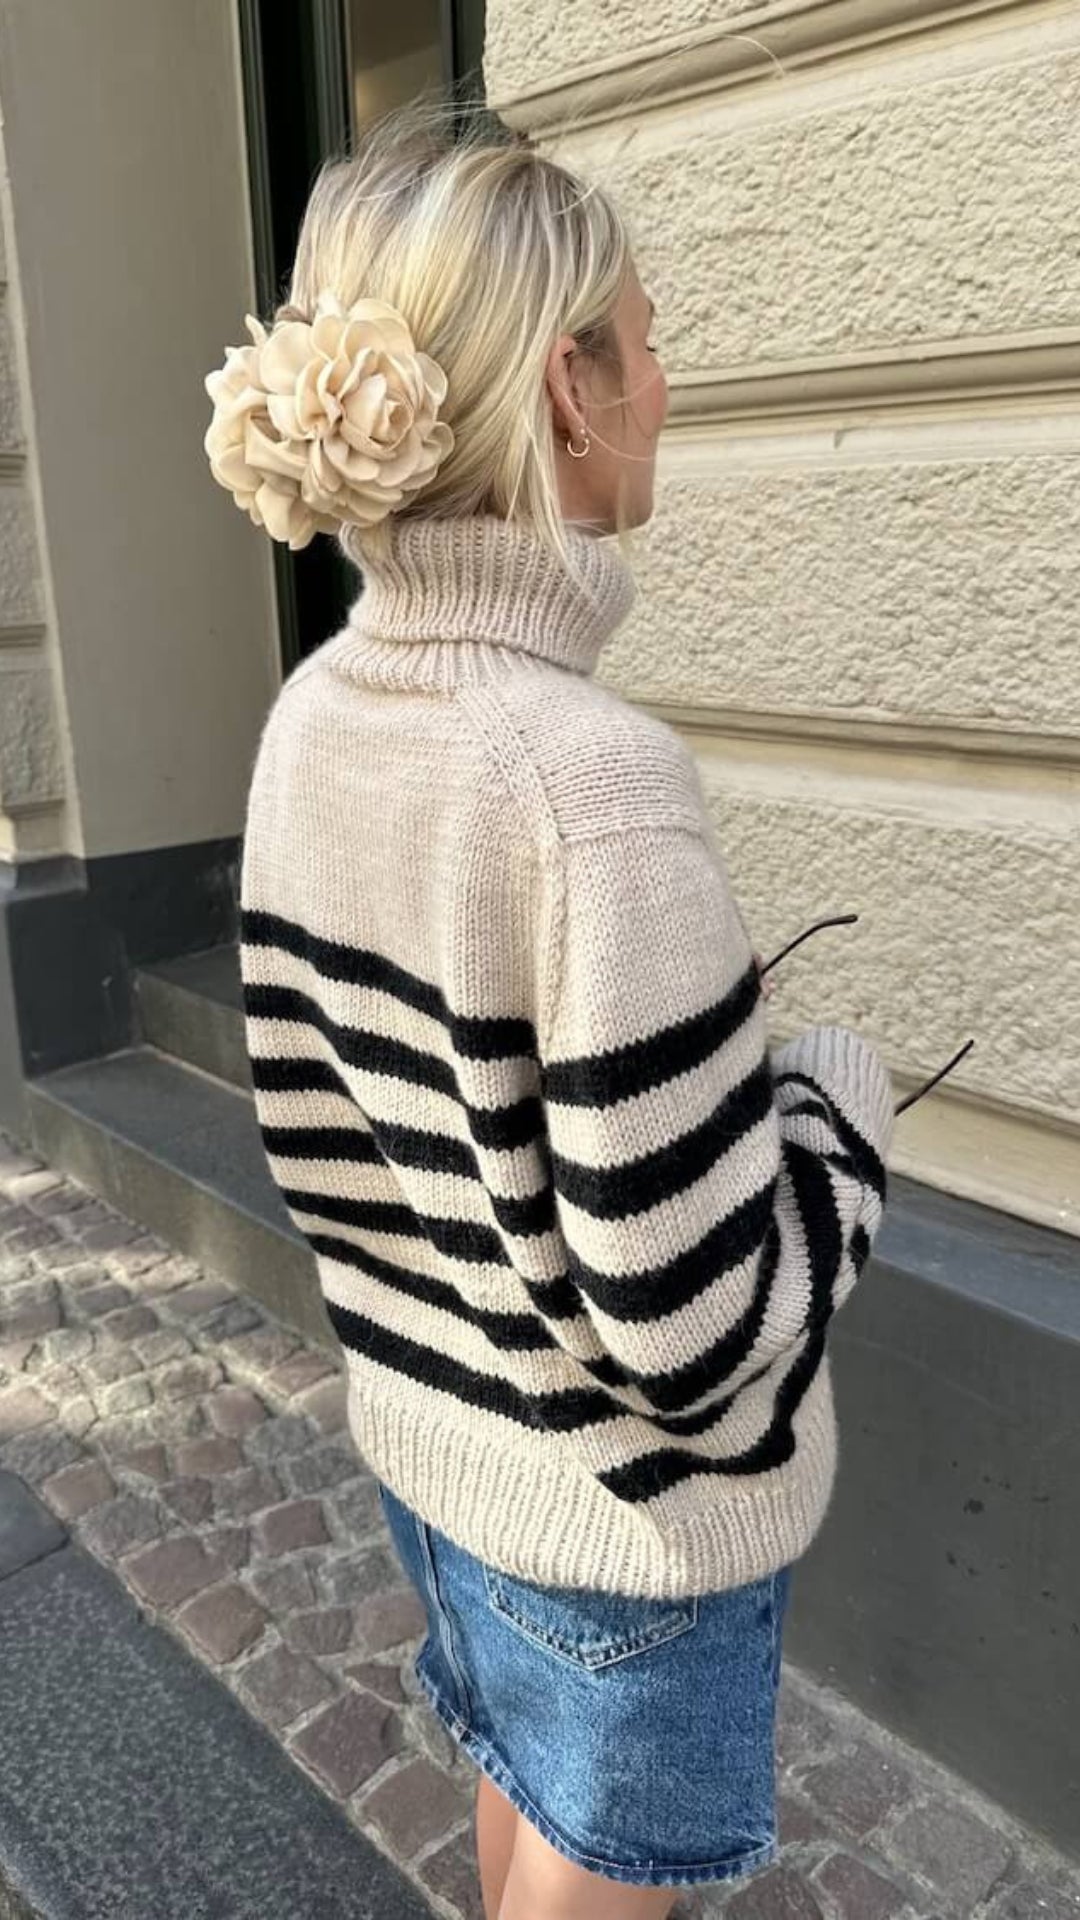 Lyon Sweater - Chunky Edition - PEER GYNT & TYNN SILK MOHAIR - Strickset von PETITE KNIT jetzt online kaufen bei OONIQUE